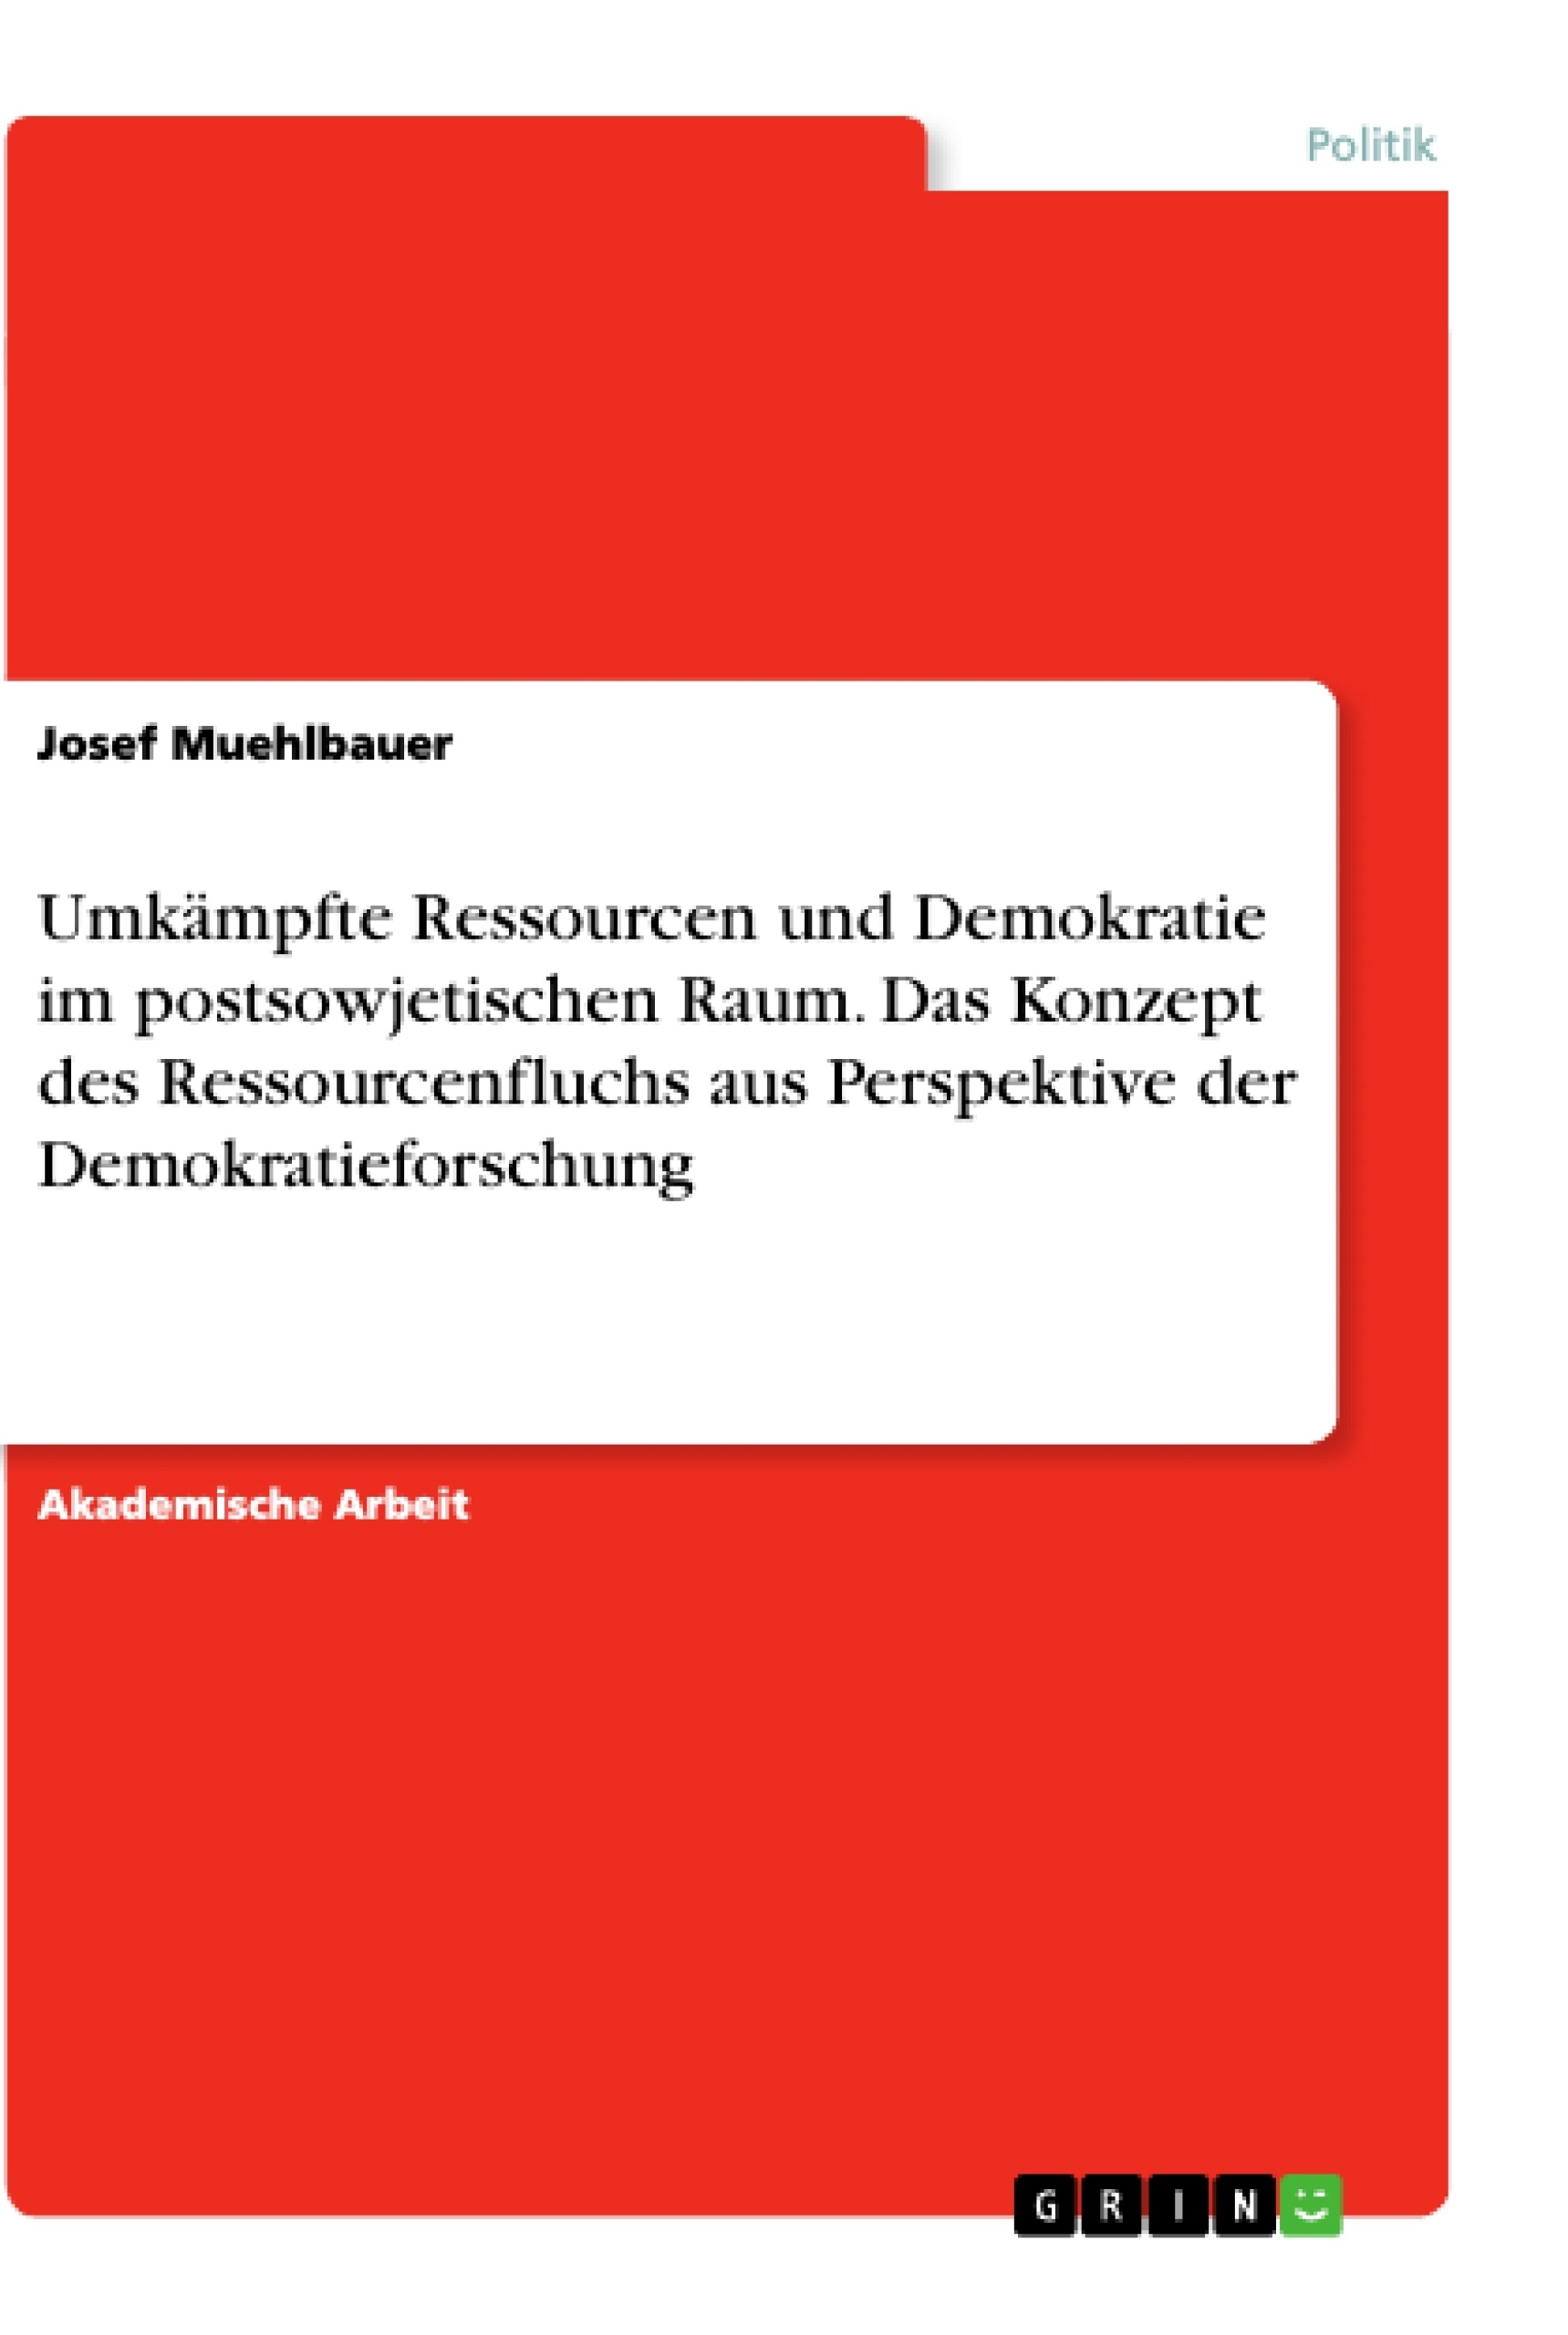 Title: Umkämpfte Ressourcen und Demokratie im postsowjetischen Raum. Das Konzept des Ressourcenfluchs aus Perspektive der Demokratieforschung